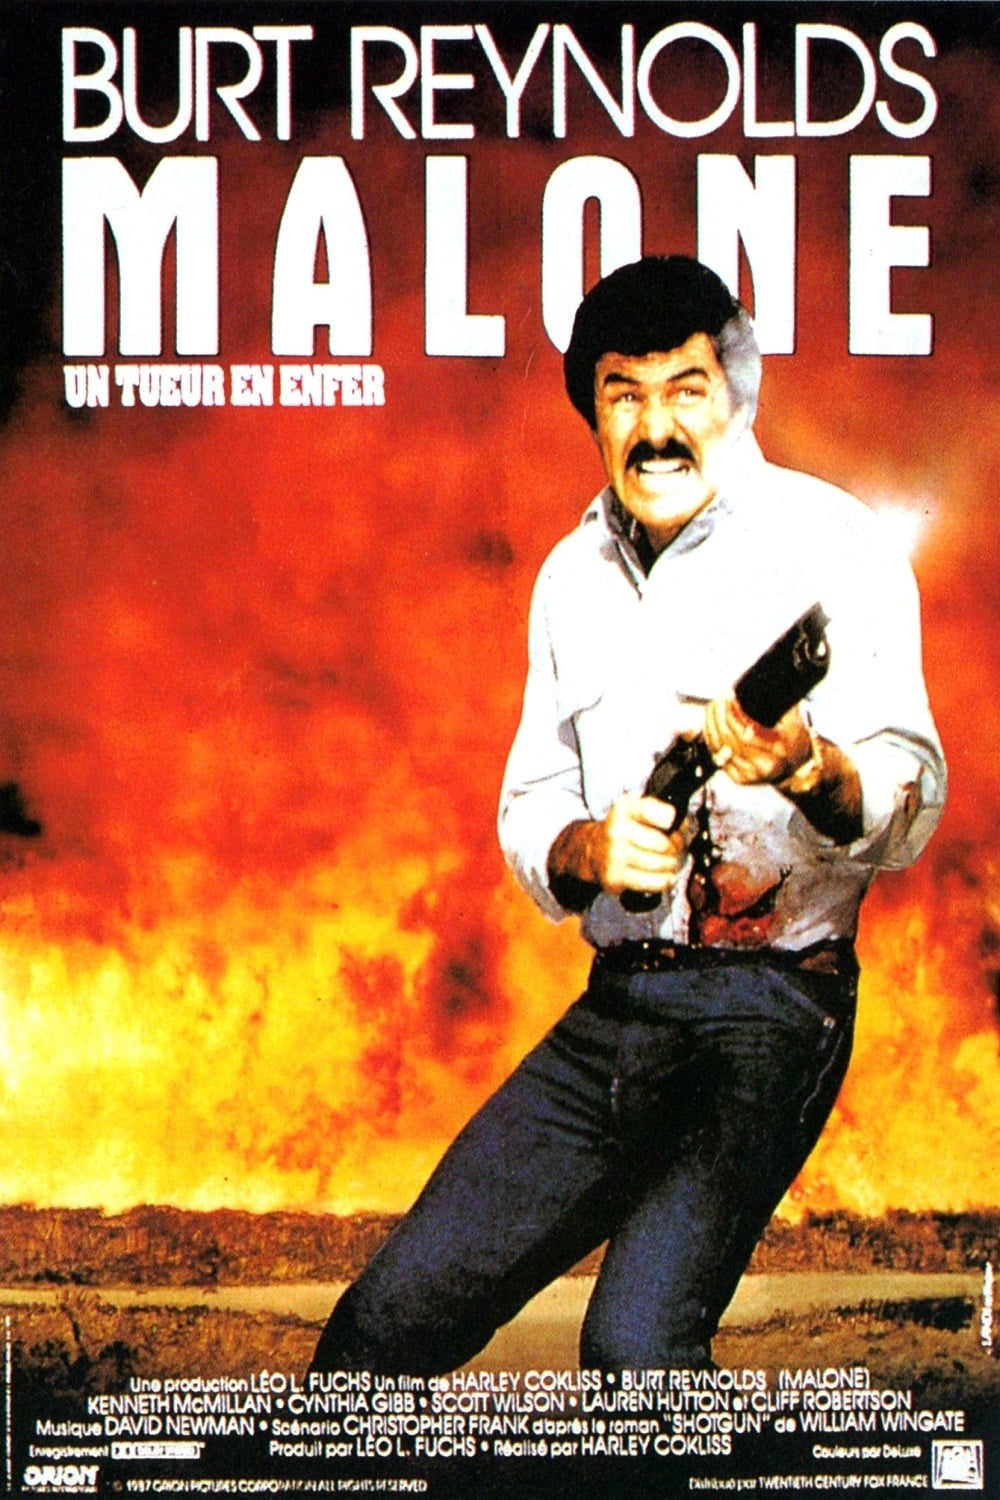 Malone, Un tueur en enfer est-il disponible sur Netflix ou autre ?